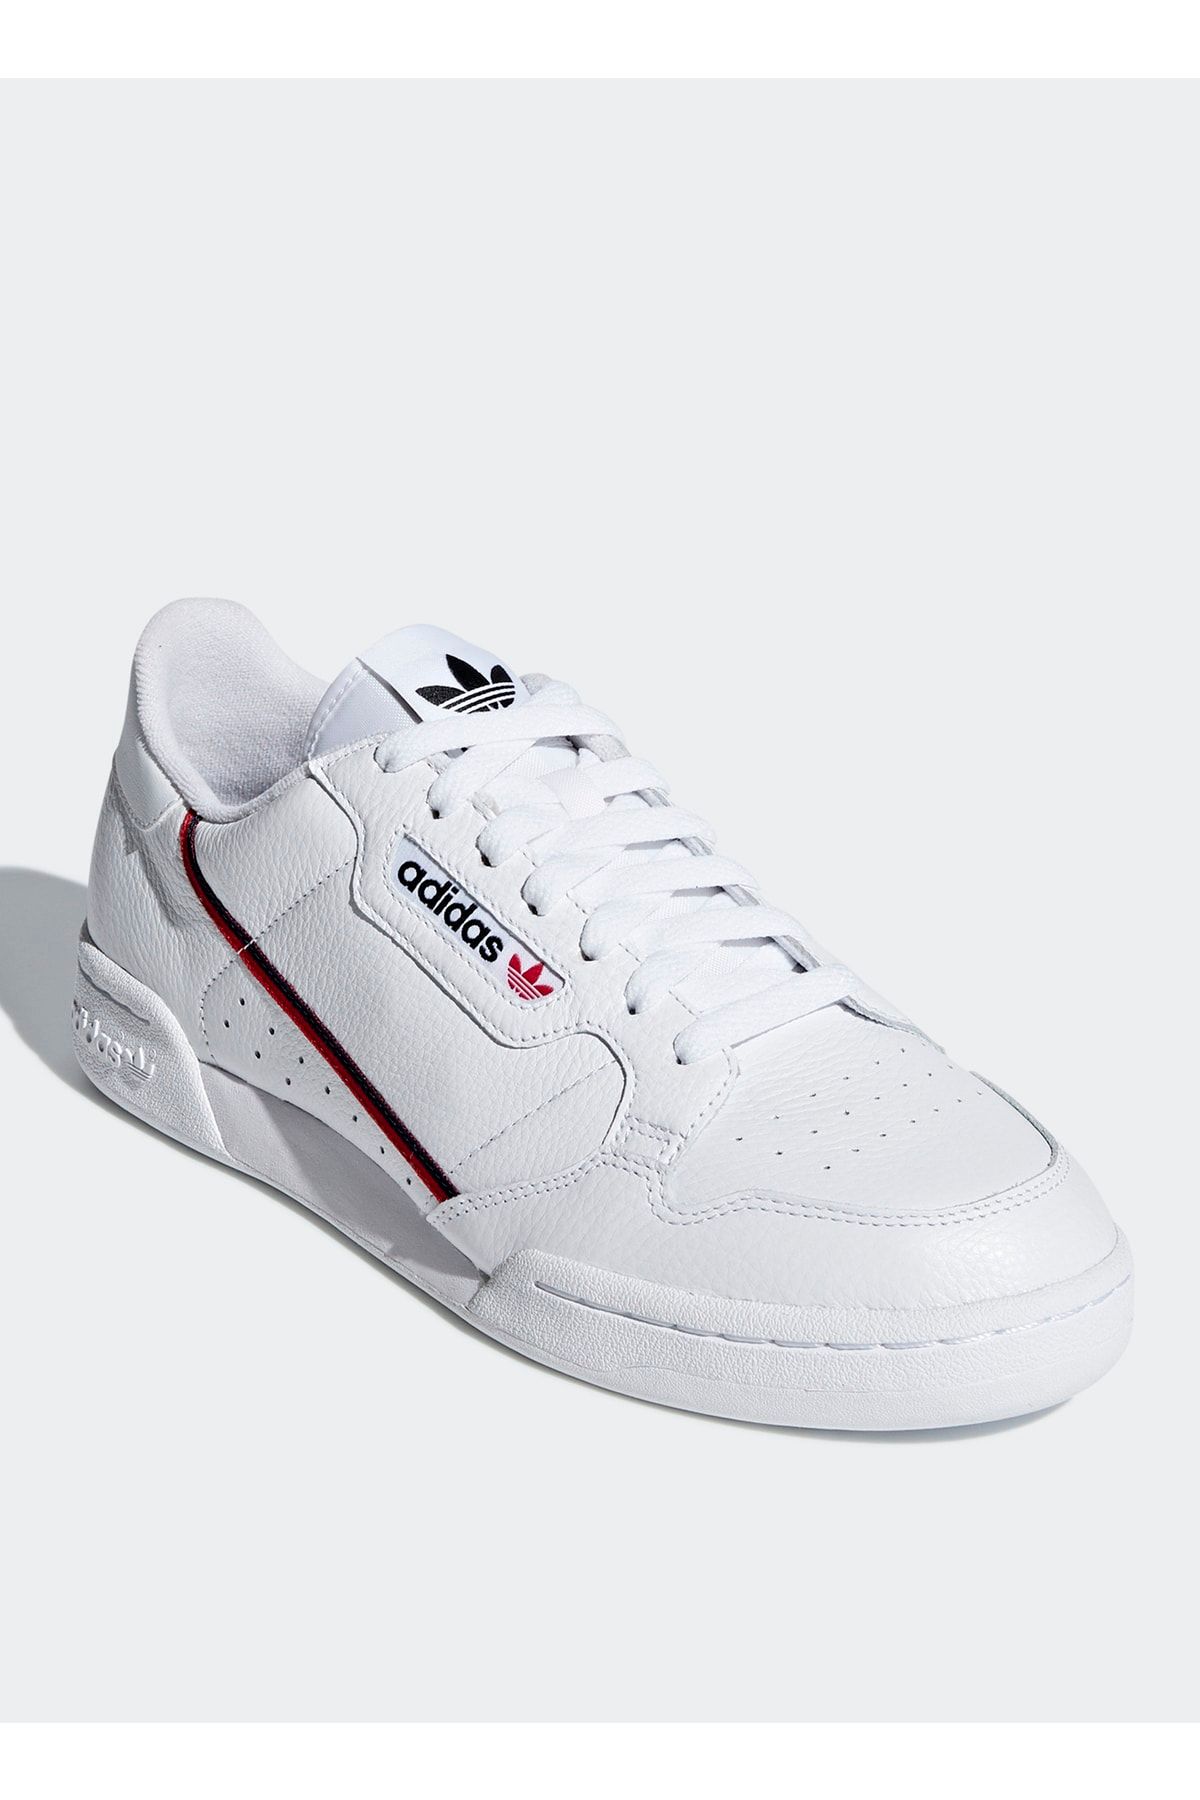 adidas G27706 Contınental 80 Deri Beyaz Erkek Lifestyle Ayakkabı